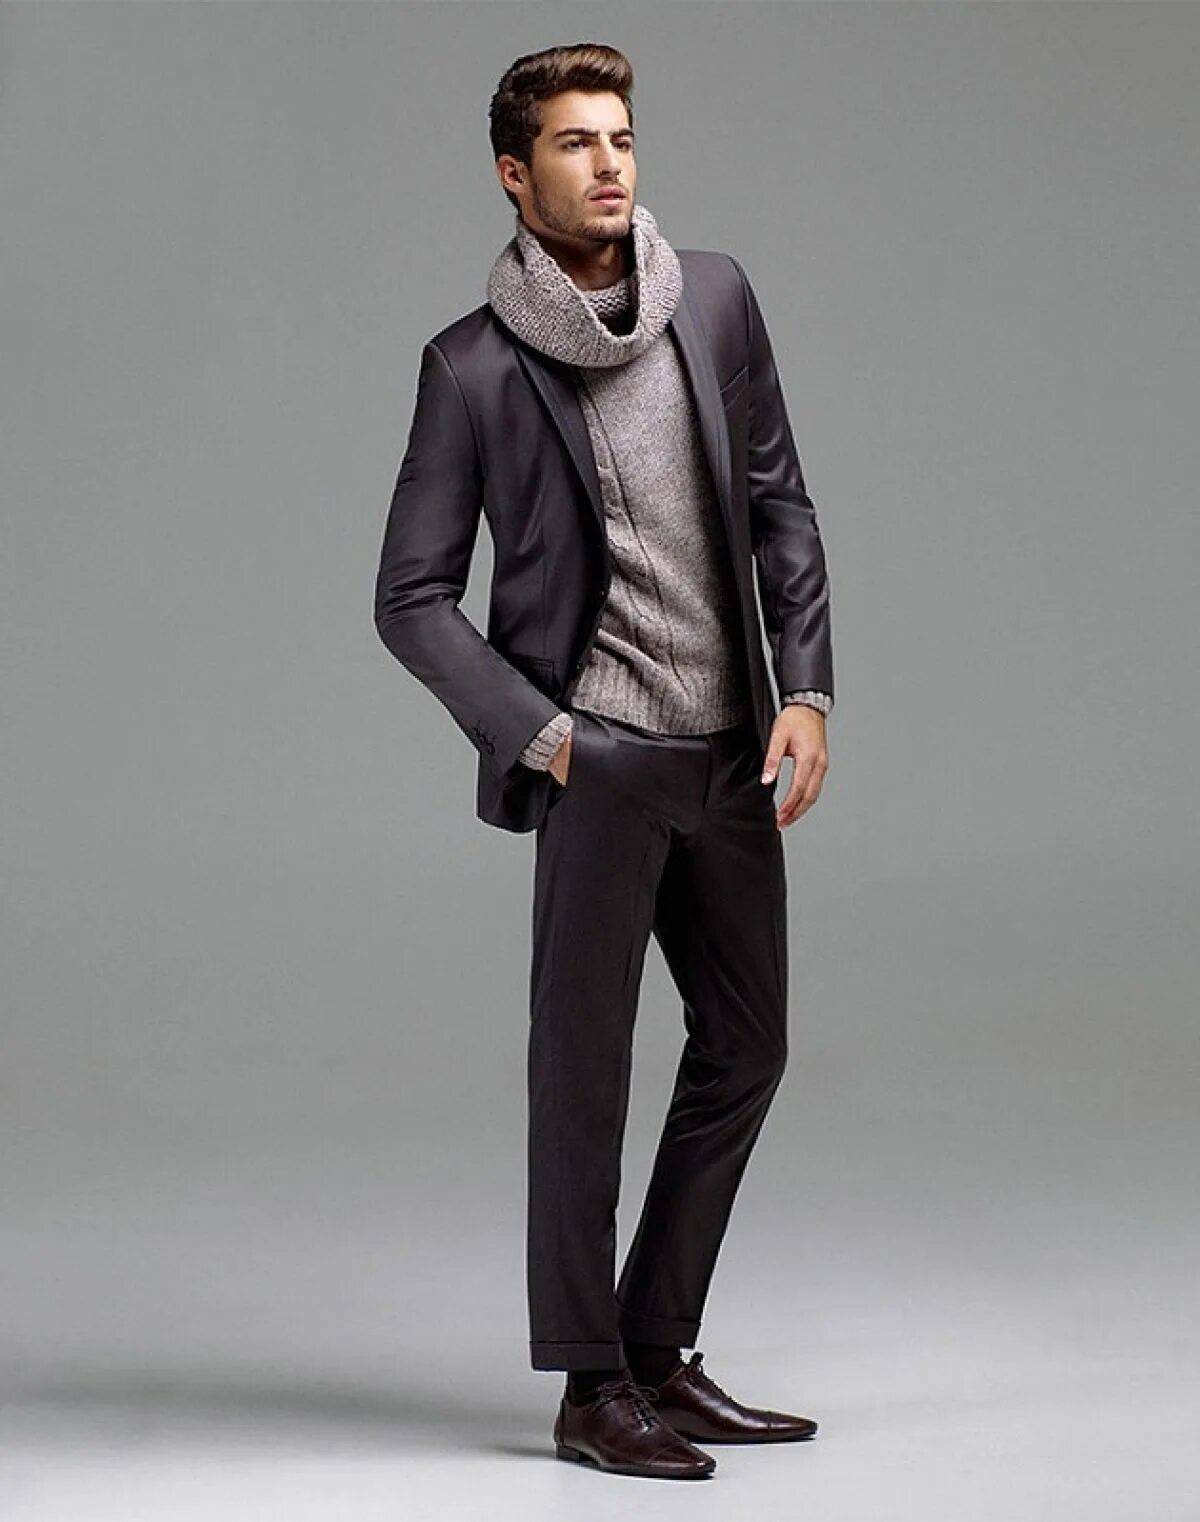 Одежда для мужчин. Модельная одежда мужчин. В одежде человека. Современный стиль одежды для мужчин.